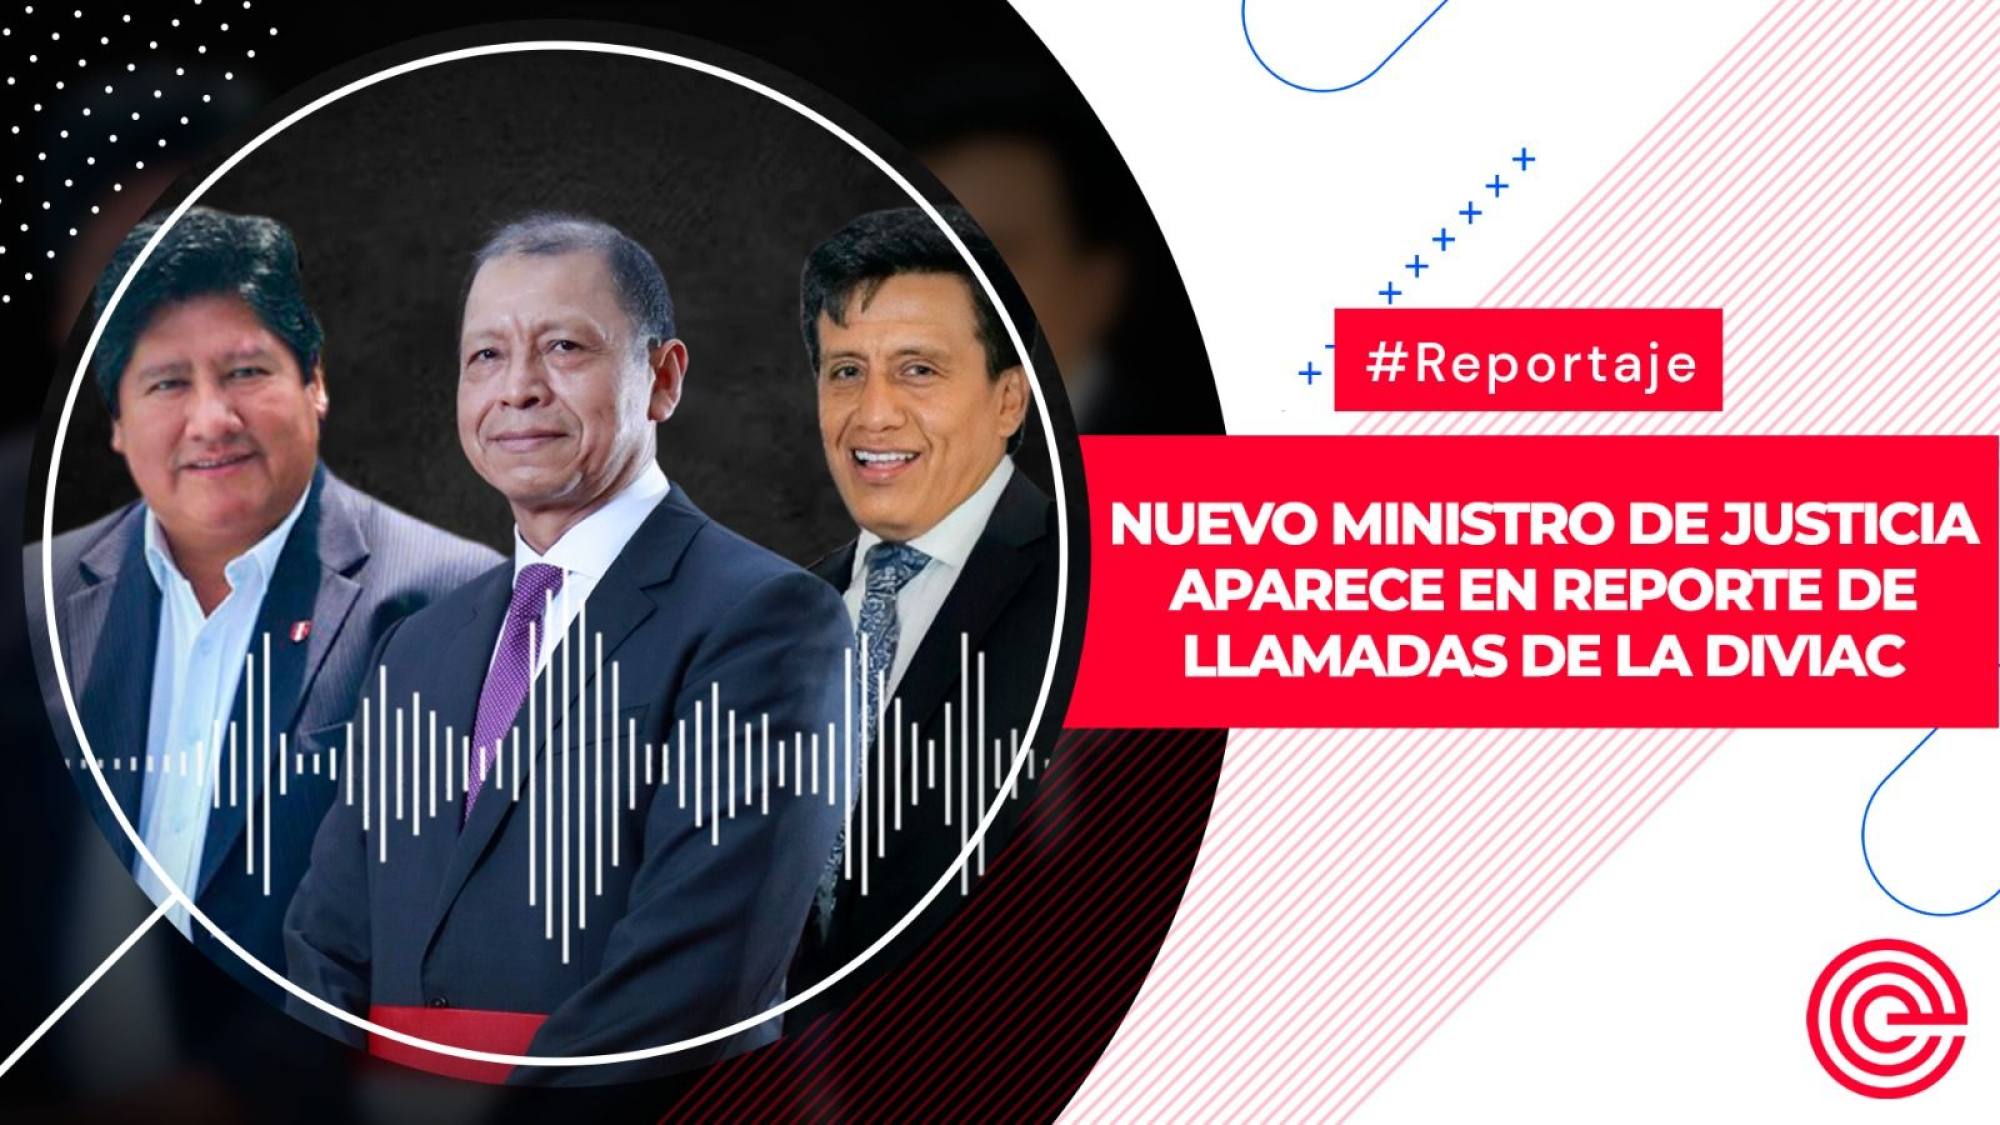 Nuevo ministro de Justicia aparece en reporte de llamadas de la Diviac, Epicentro TV